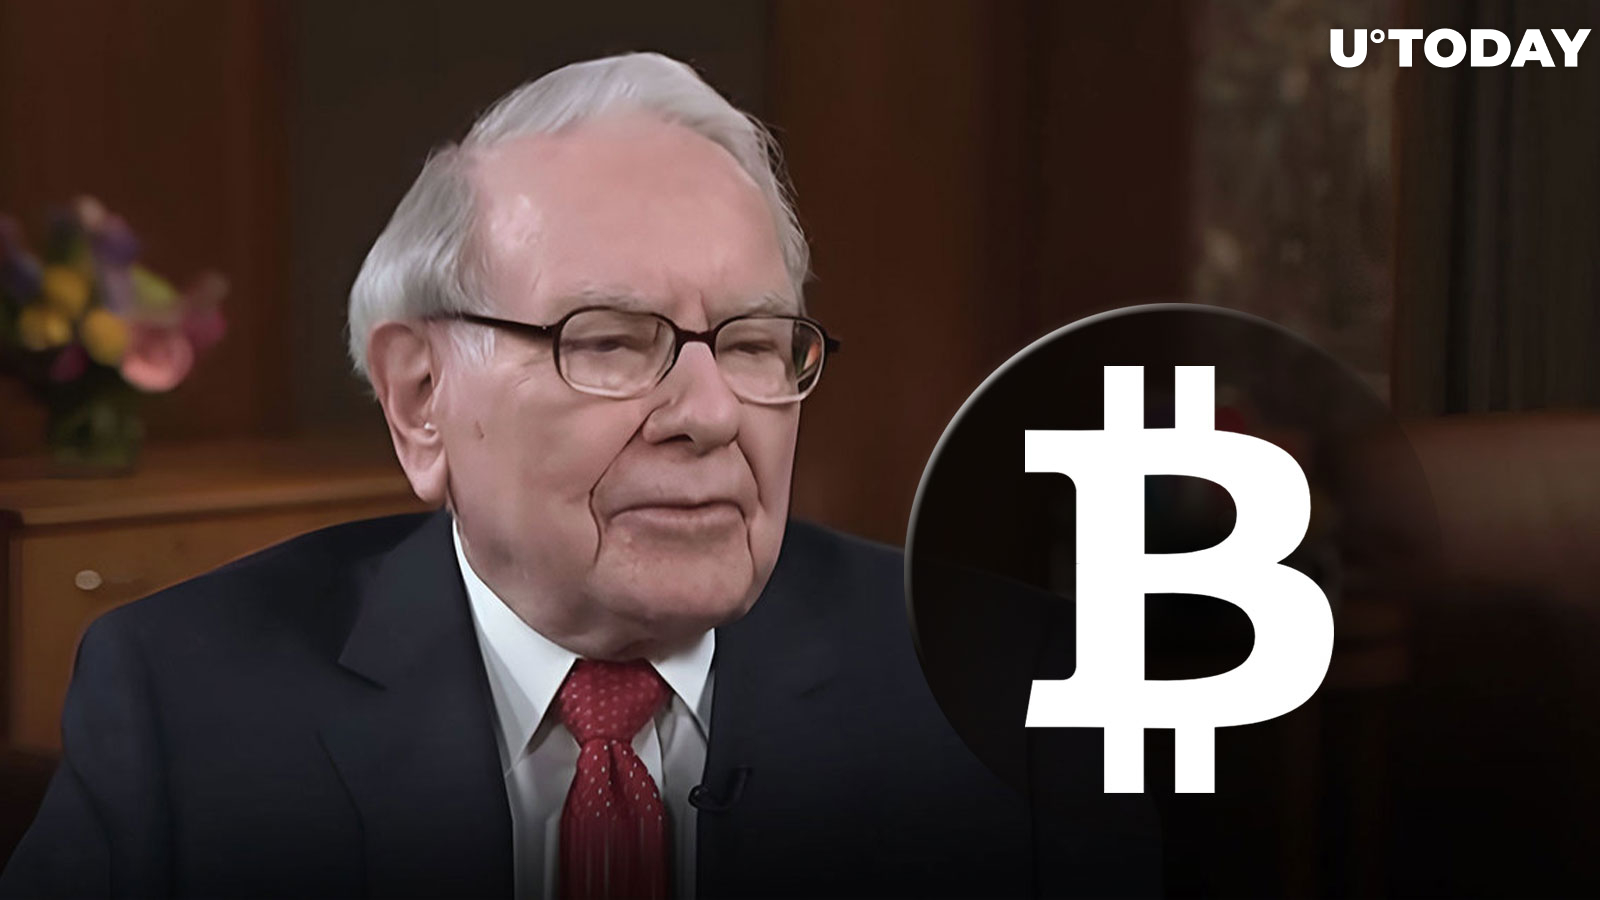 Legendary Investor Warren Buffett Calls Bitcoin (BTC) "Gambling Token"